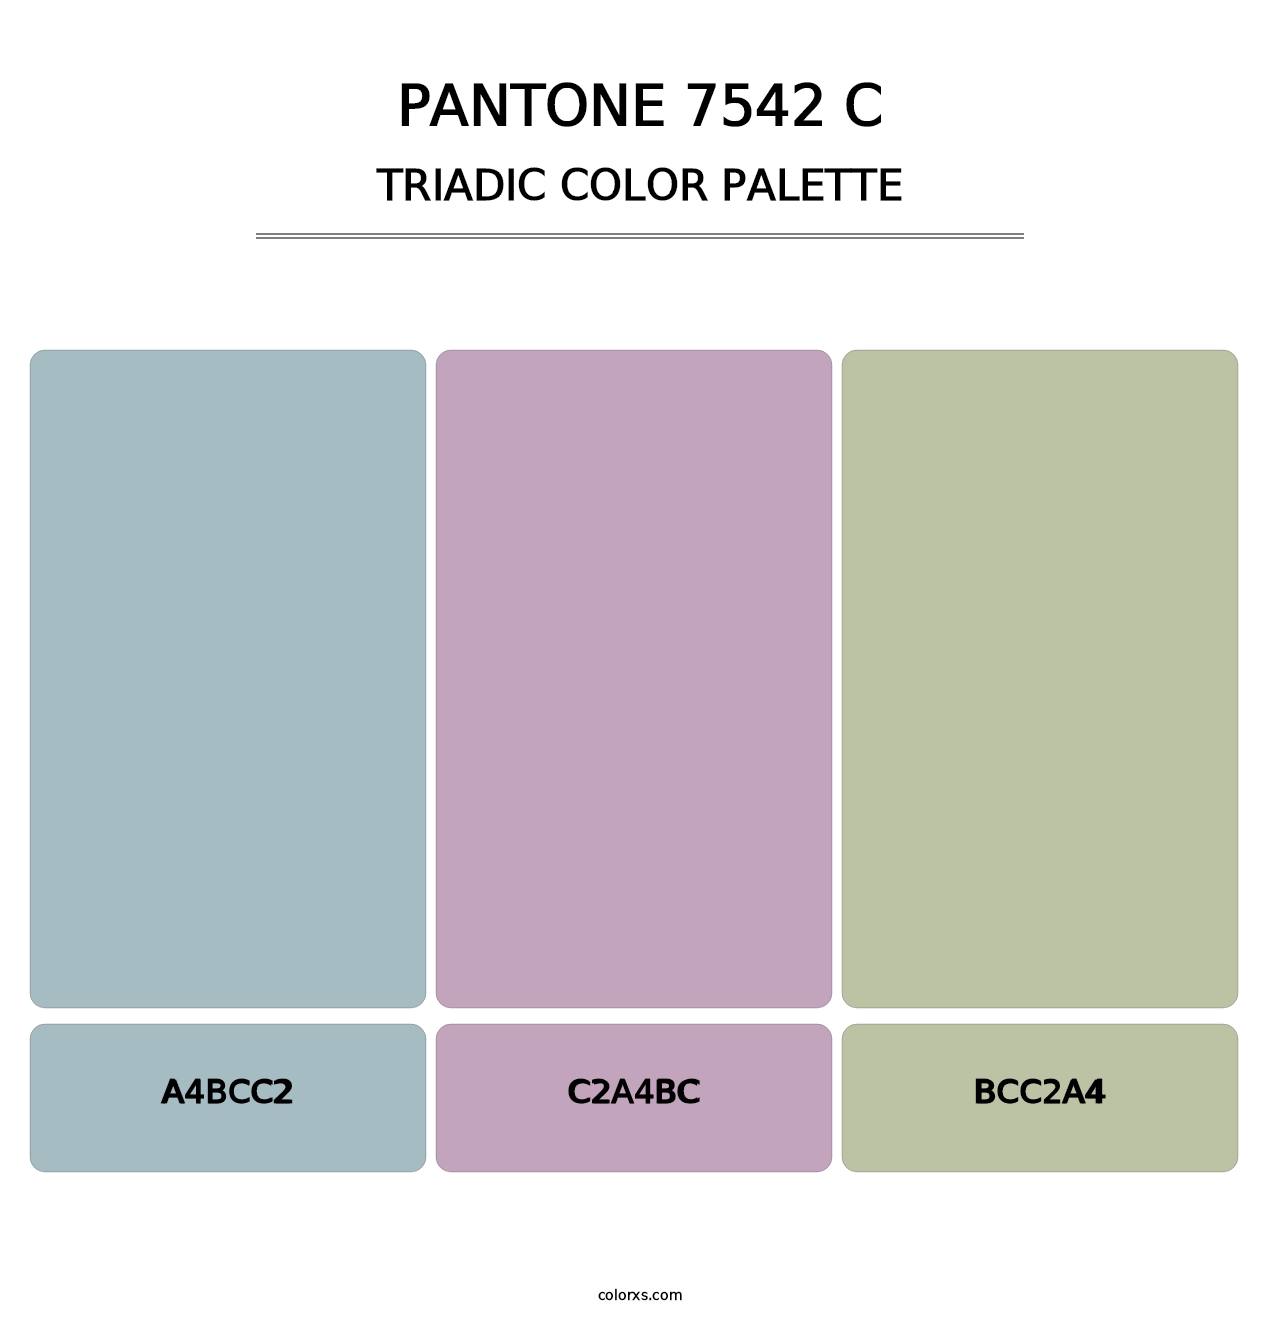 PANTONE 7542 C - Triadic Color Palette